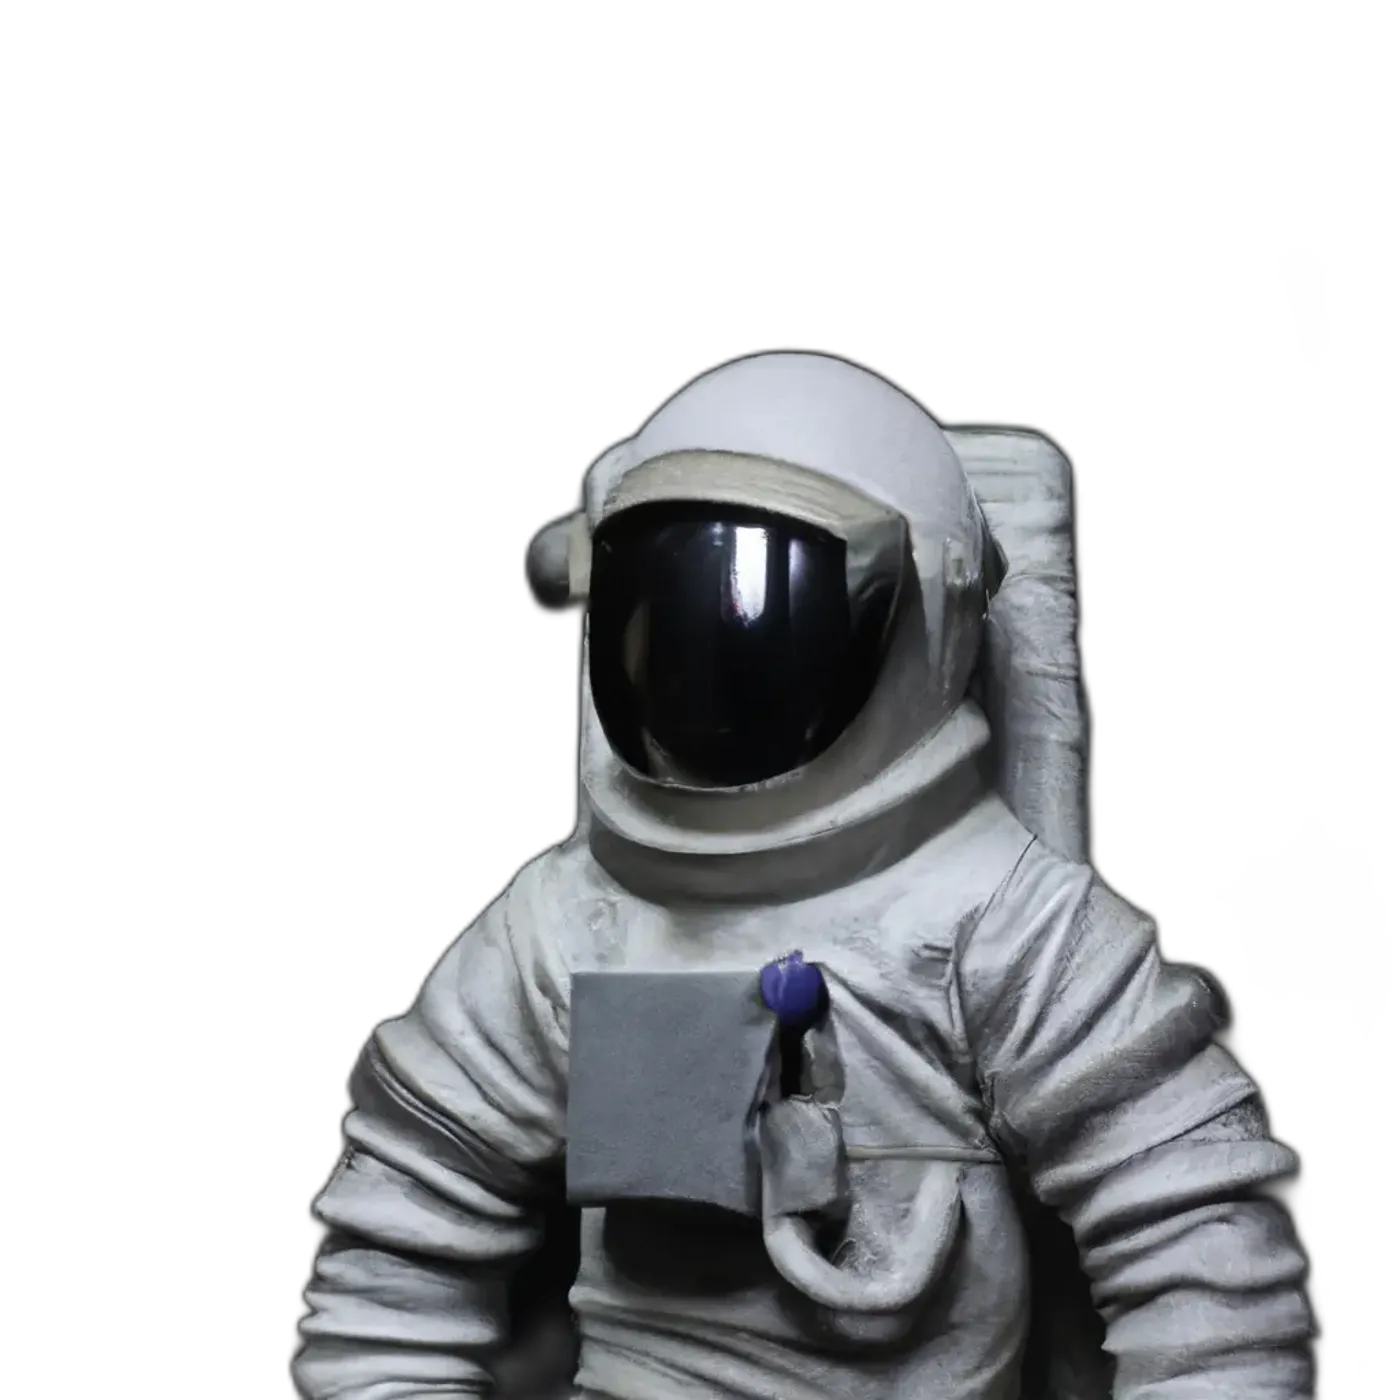 An astronaut sculpture